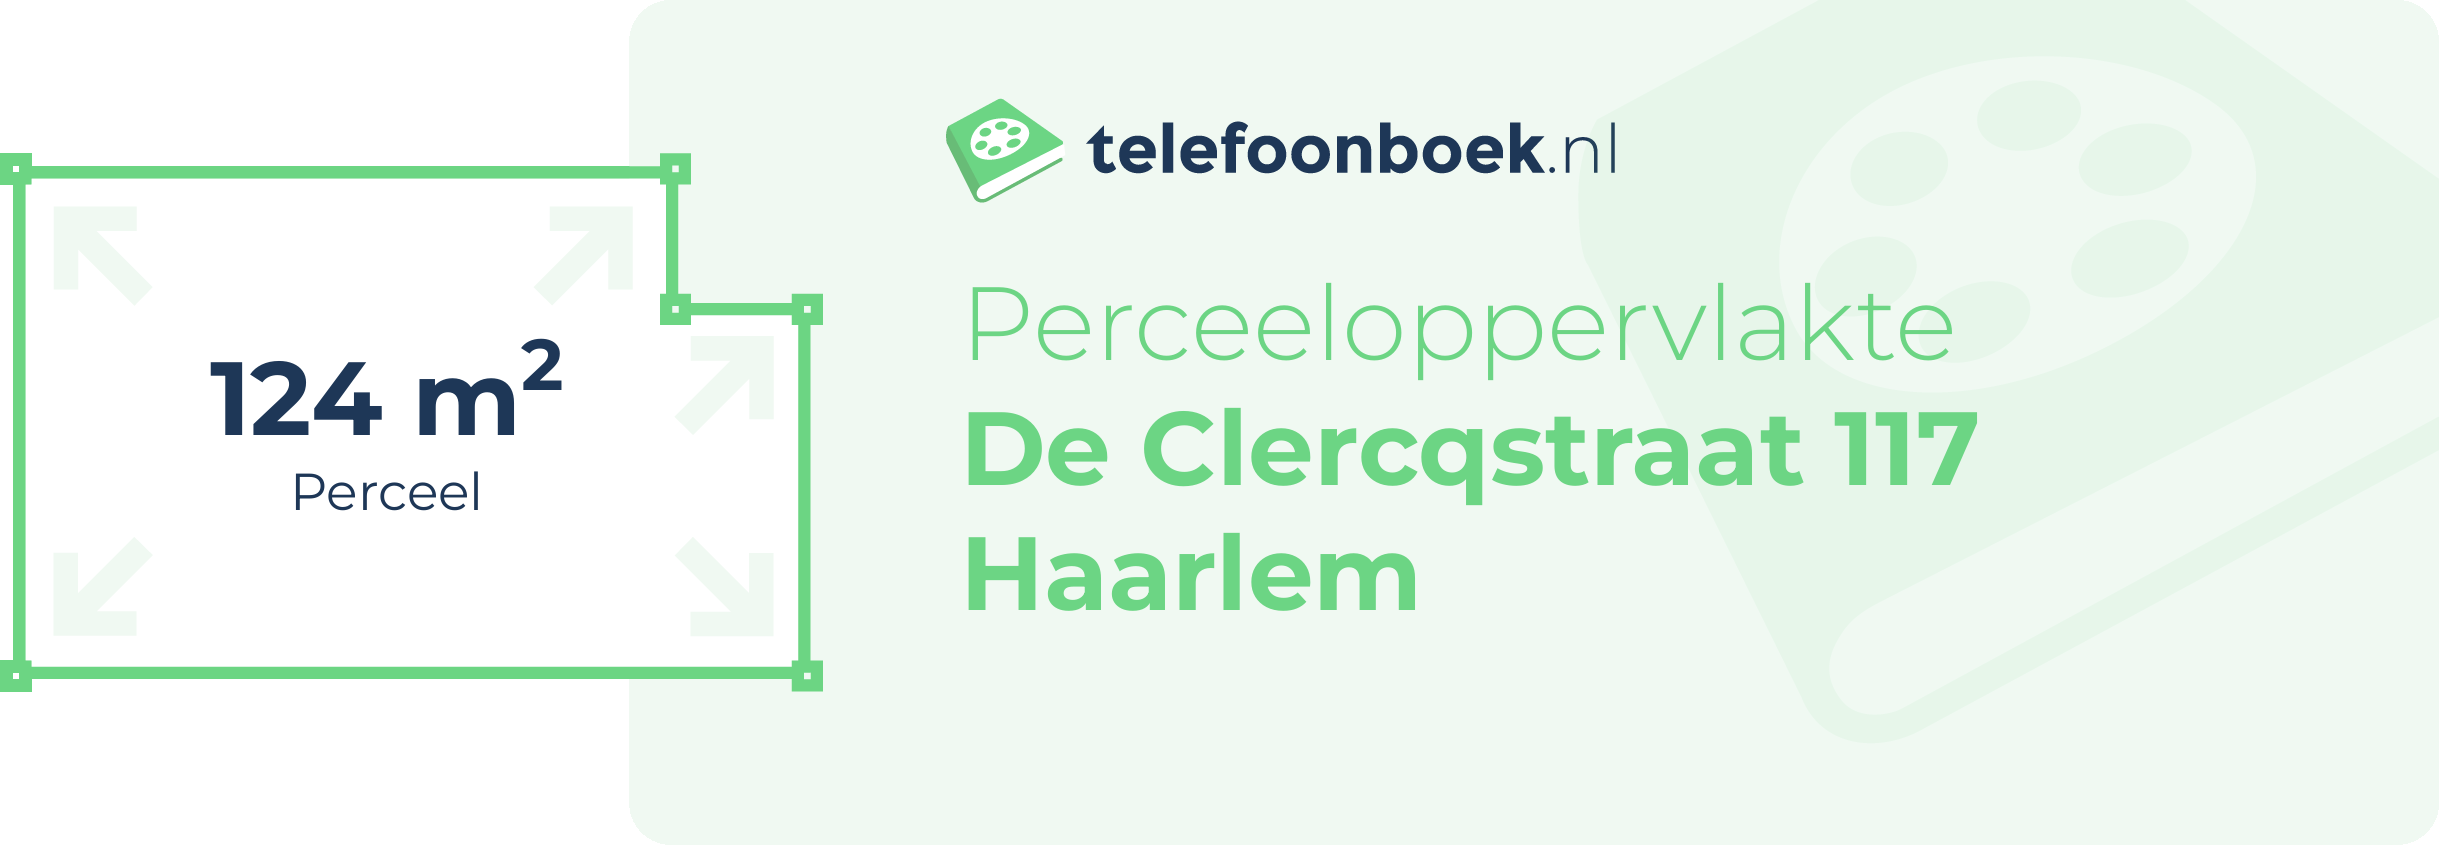 Perceeloppervlakte De Clercqstraat 117 Haarlem